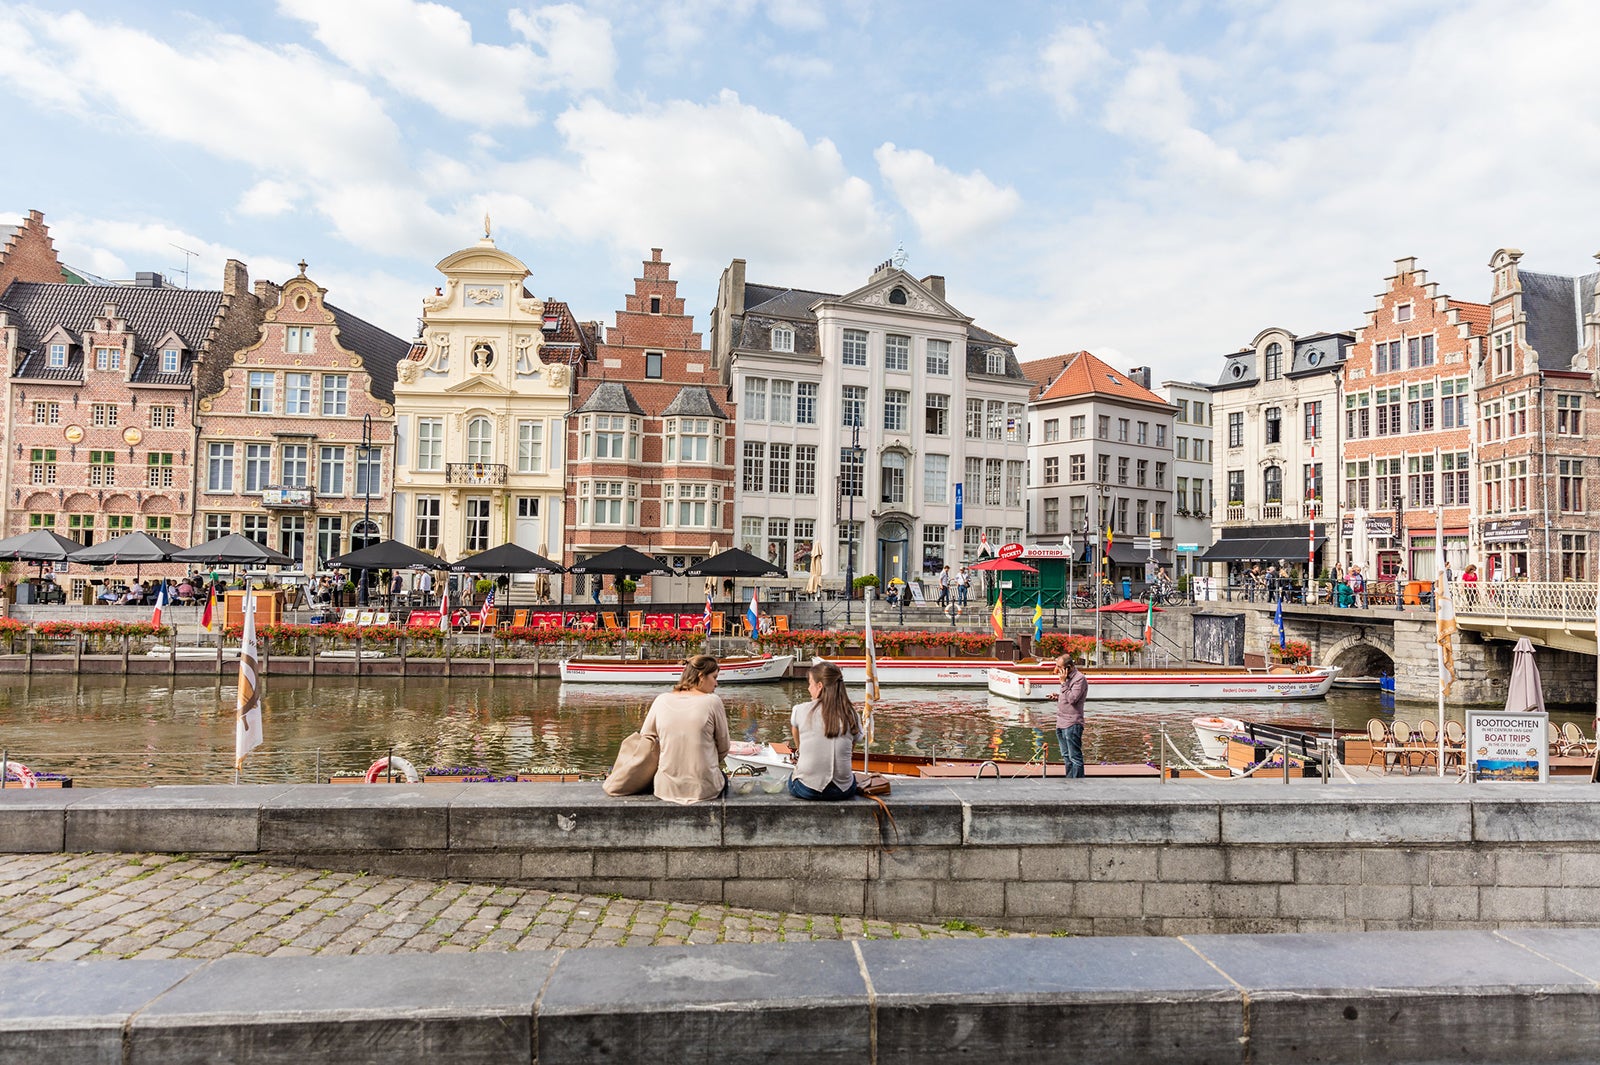 ベルギー フランダース徹底ガイド Sns映えの街並み グルメに舌鼓 人気6エリアを巡る旅 女子旅プレス